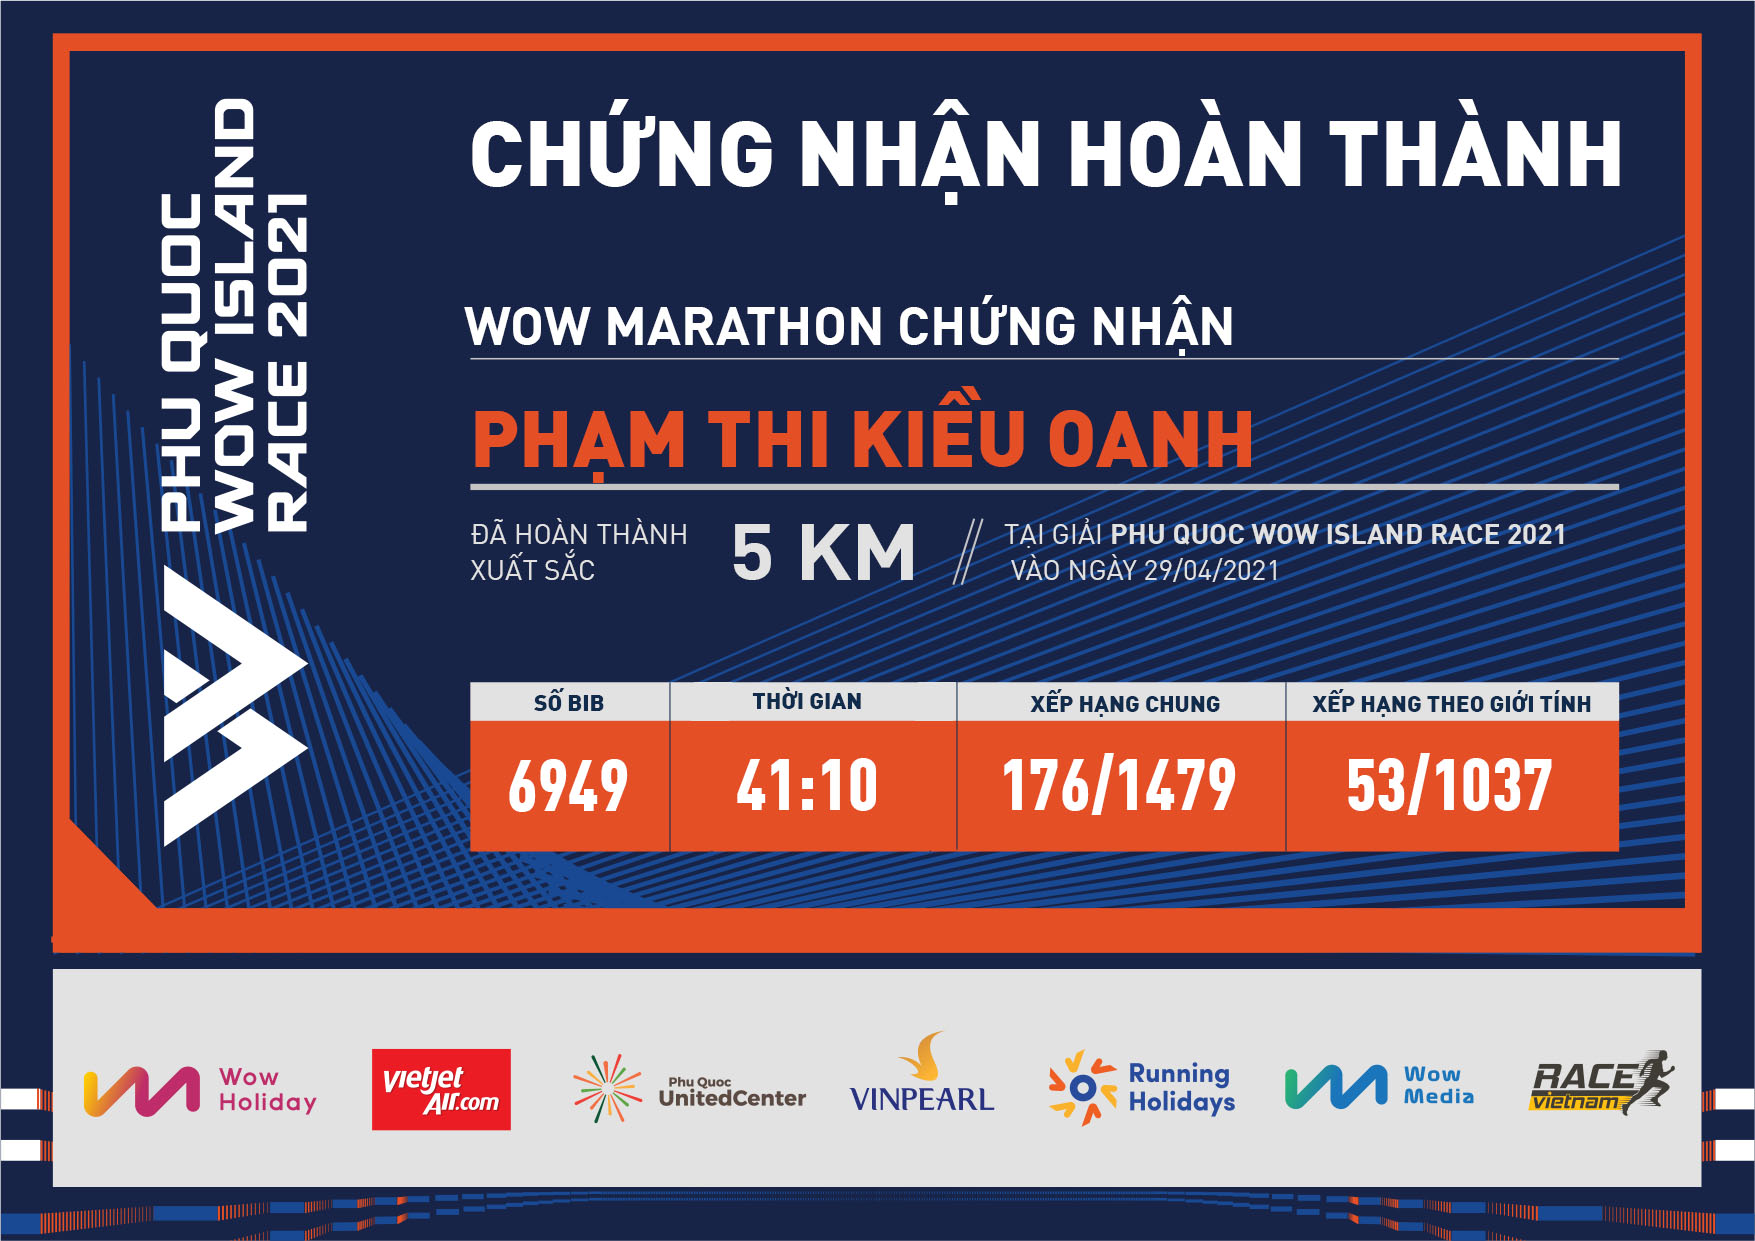 6949 - Phạm Thi Kiều Oanh